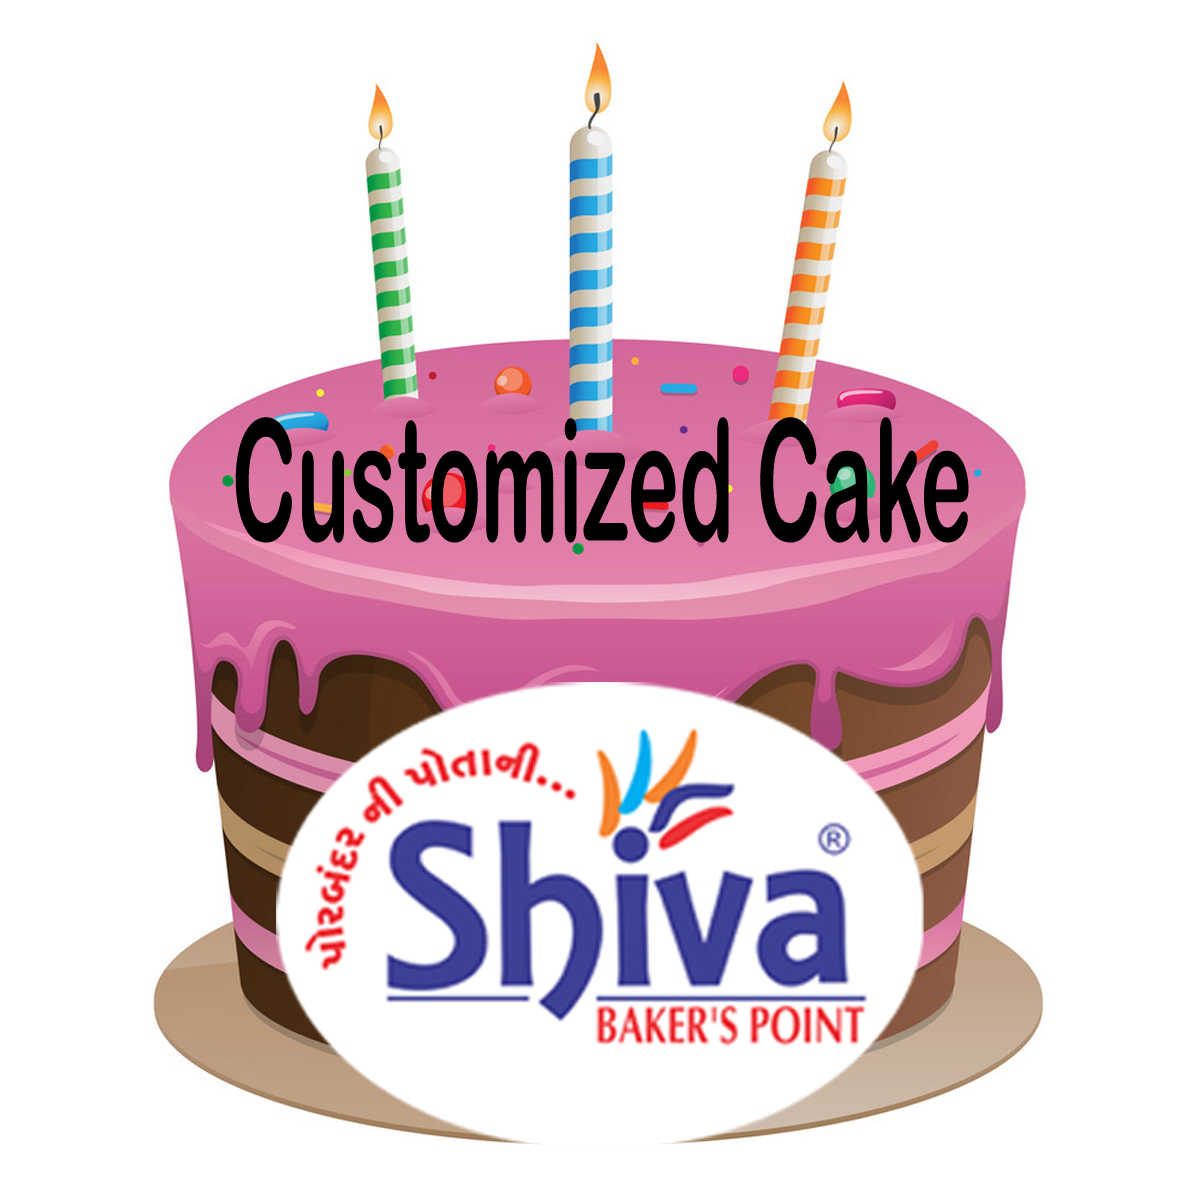 Customized Cake - Customized Cake 1000